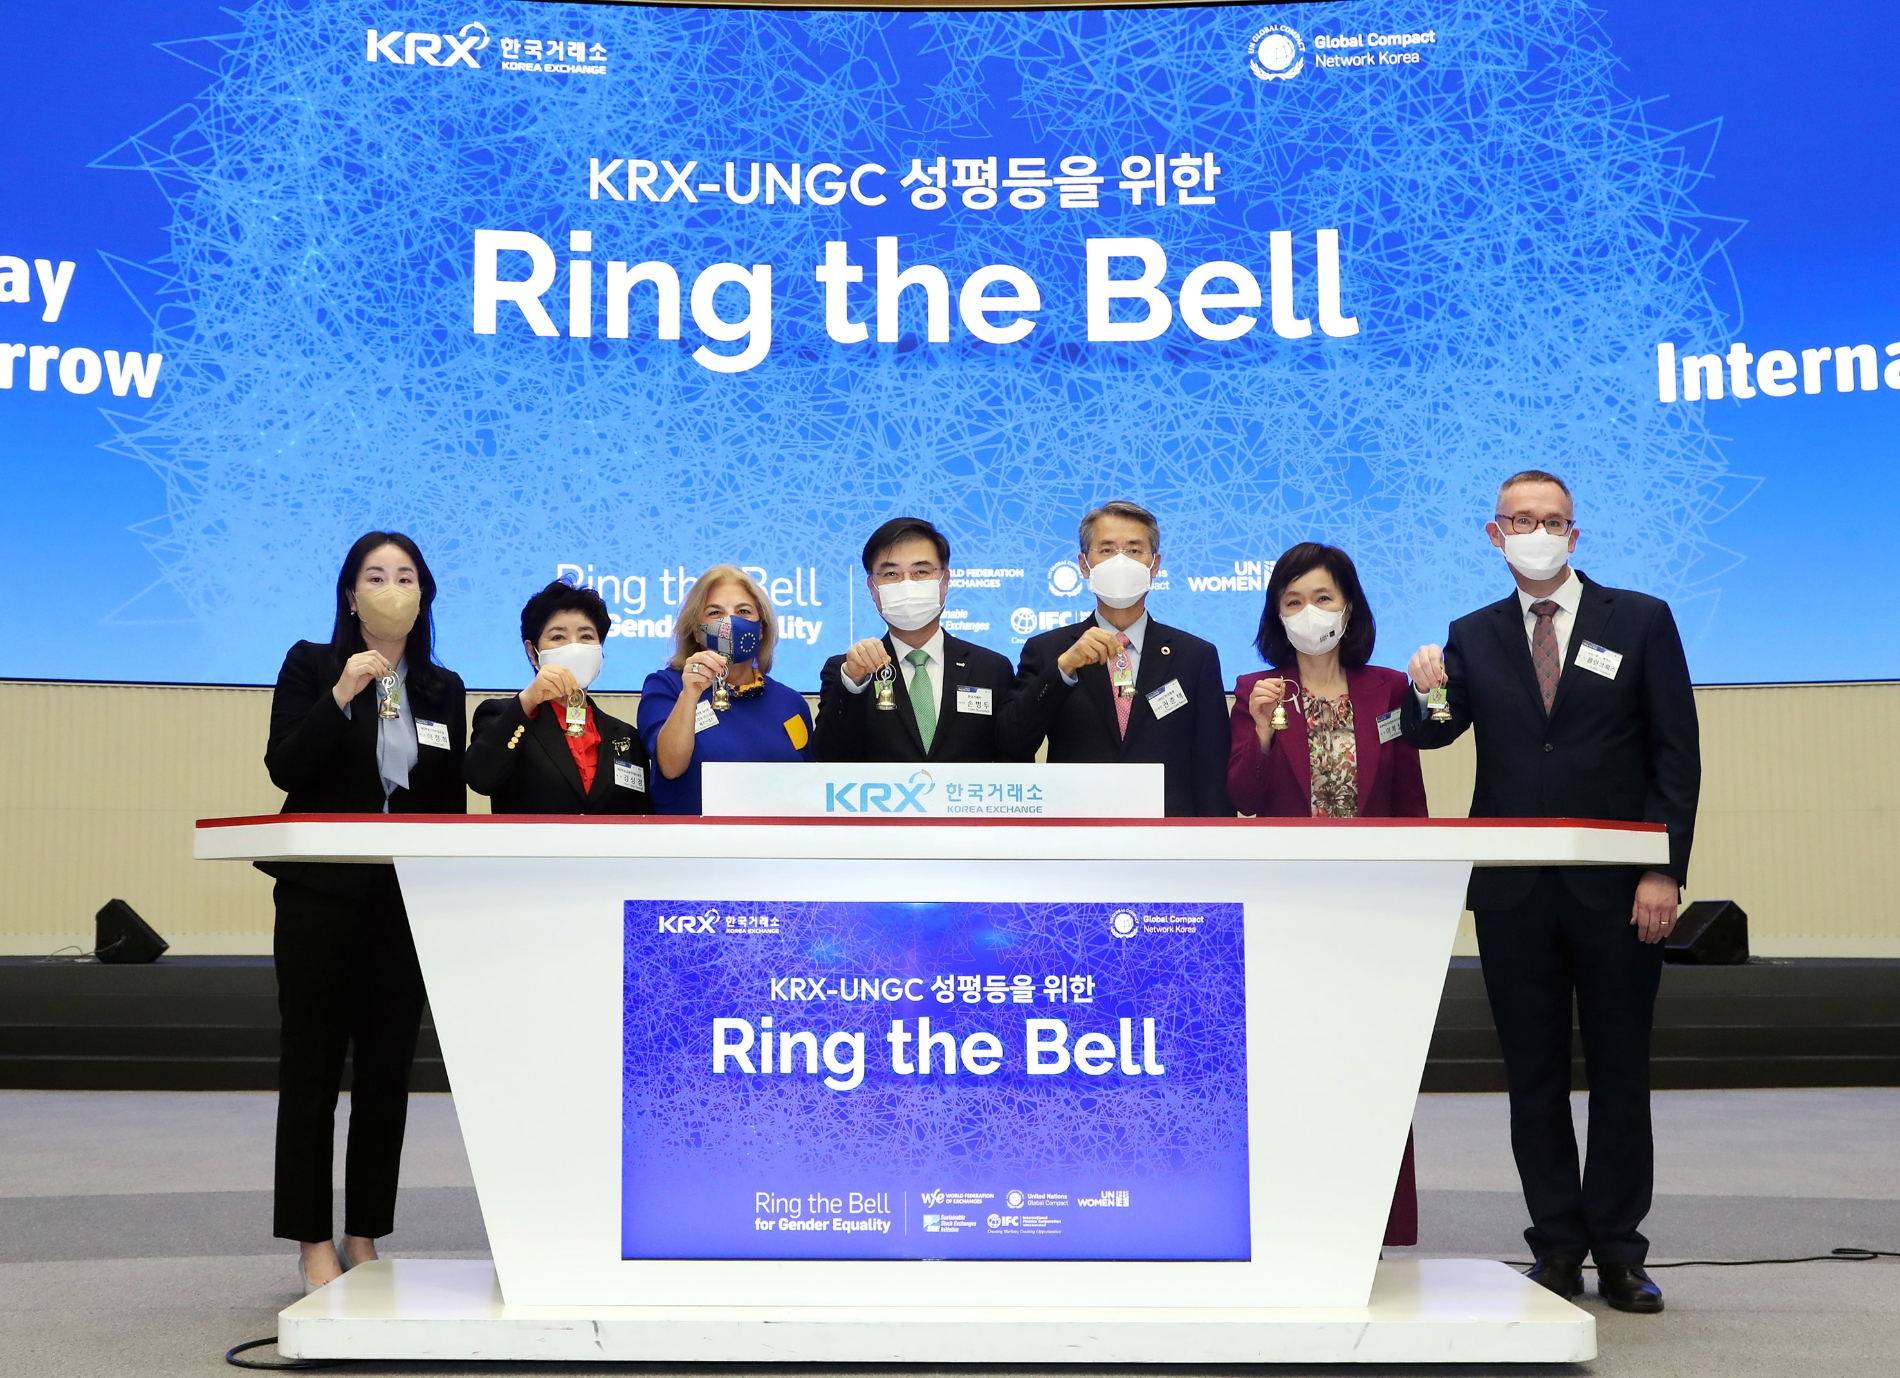 한국거래소는 16일 오전 서울사옥에서 'KRX-UNGC 성평등을 위한 Ring the Bell 행사'를 개최했다. 타종행사에서 (왼쪽부터) 이정희 여성스타트업포럼 회장, 김상경 여성금융인네트워크 회장, 마리아 카스티요 페르난데즈 주한 EU 대사, 손병두 한국거래소 이사장, 권춘택 UNGC 한국협회 사무총장, 이복실 세계여성이사협회 한국지부 회장, 콜린 크룩스 주한 영국 대사. / 사진제공= 한국거래소(2022.03.16)